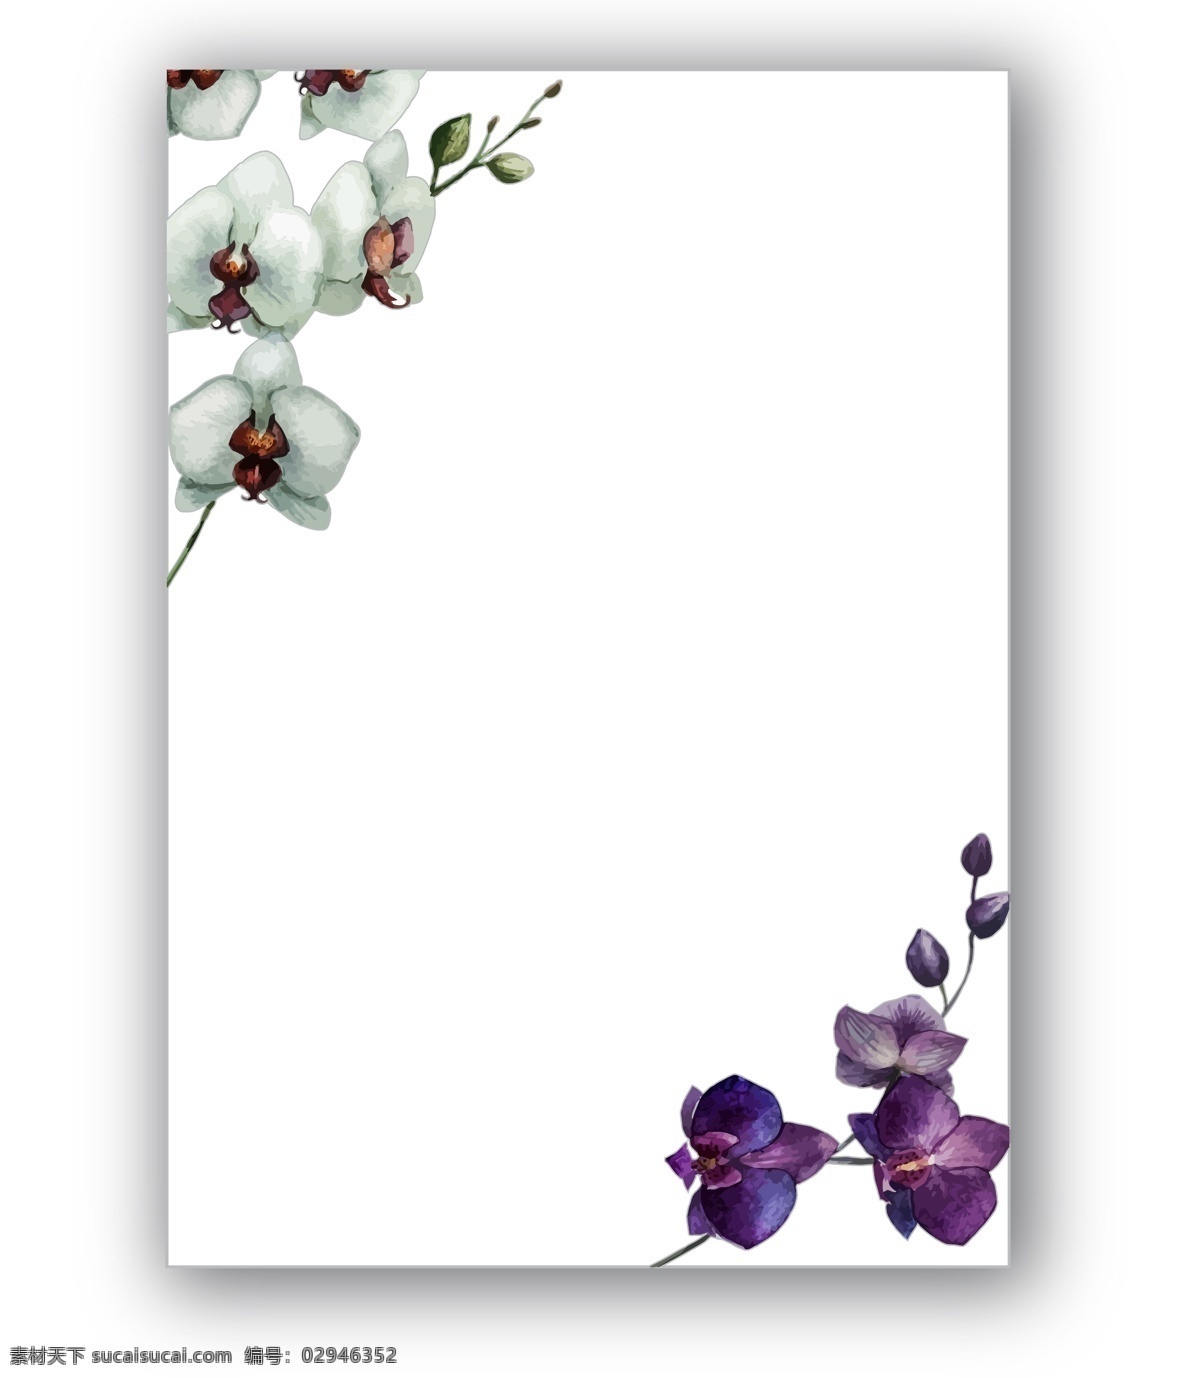 水彩 绘 花朵 边框 蝴蝶兰 花卉 水彩绘 植物